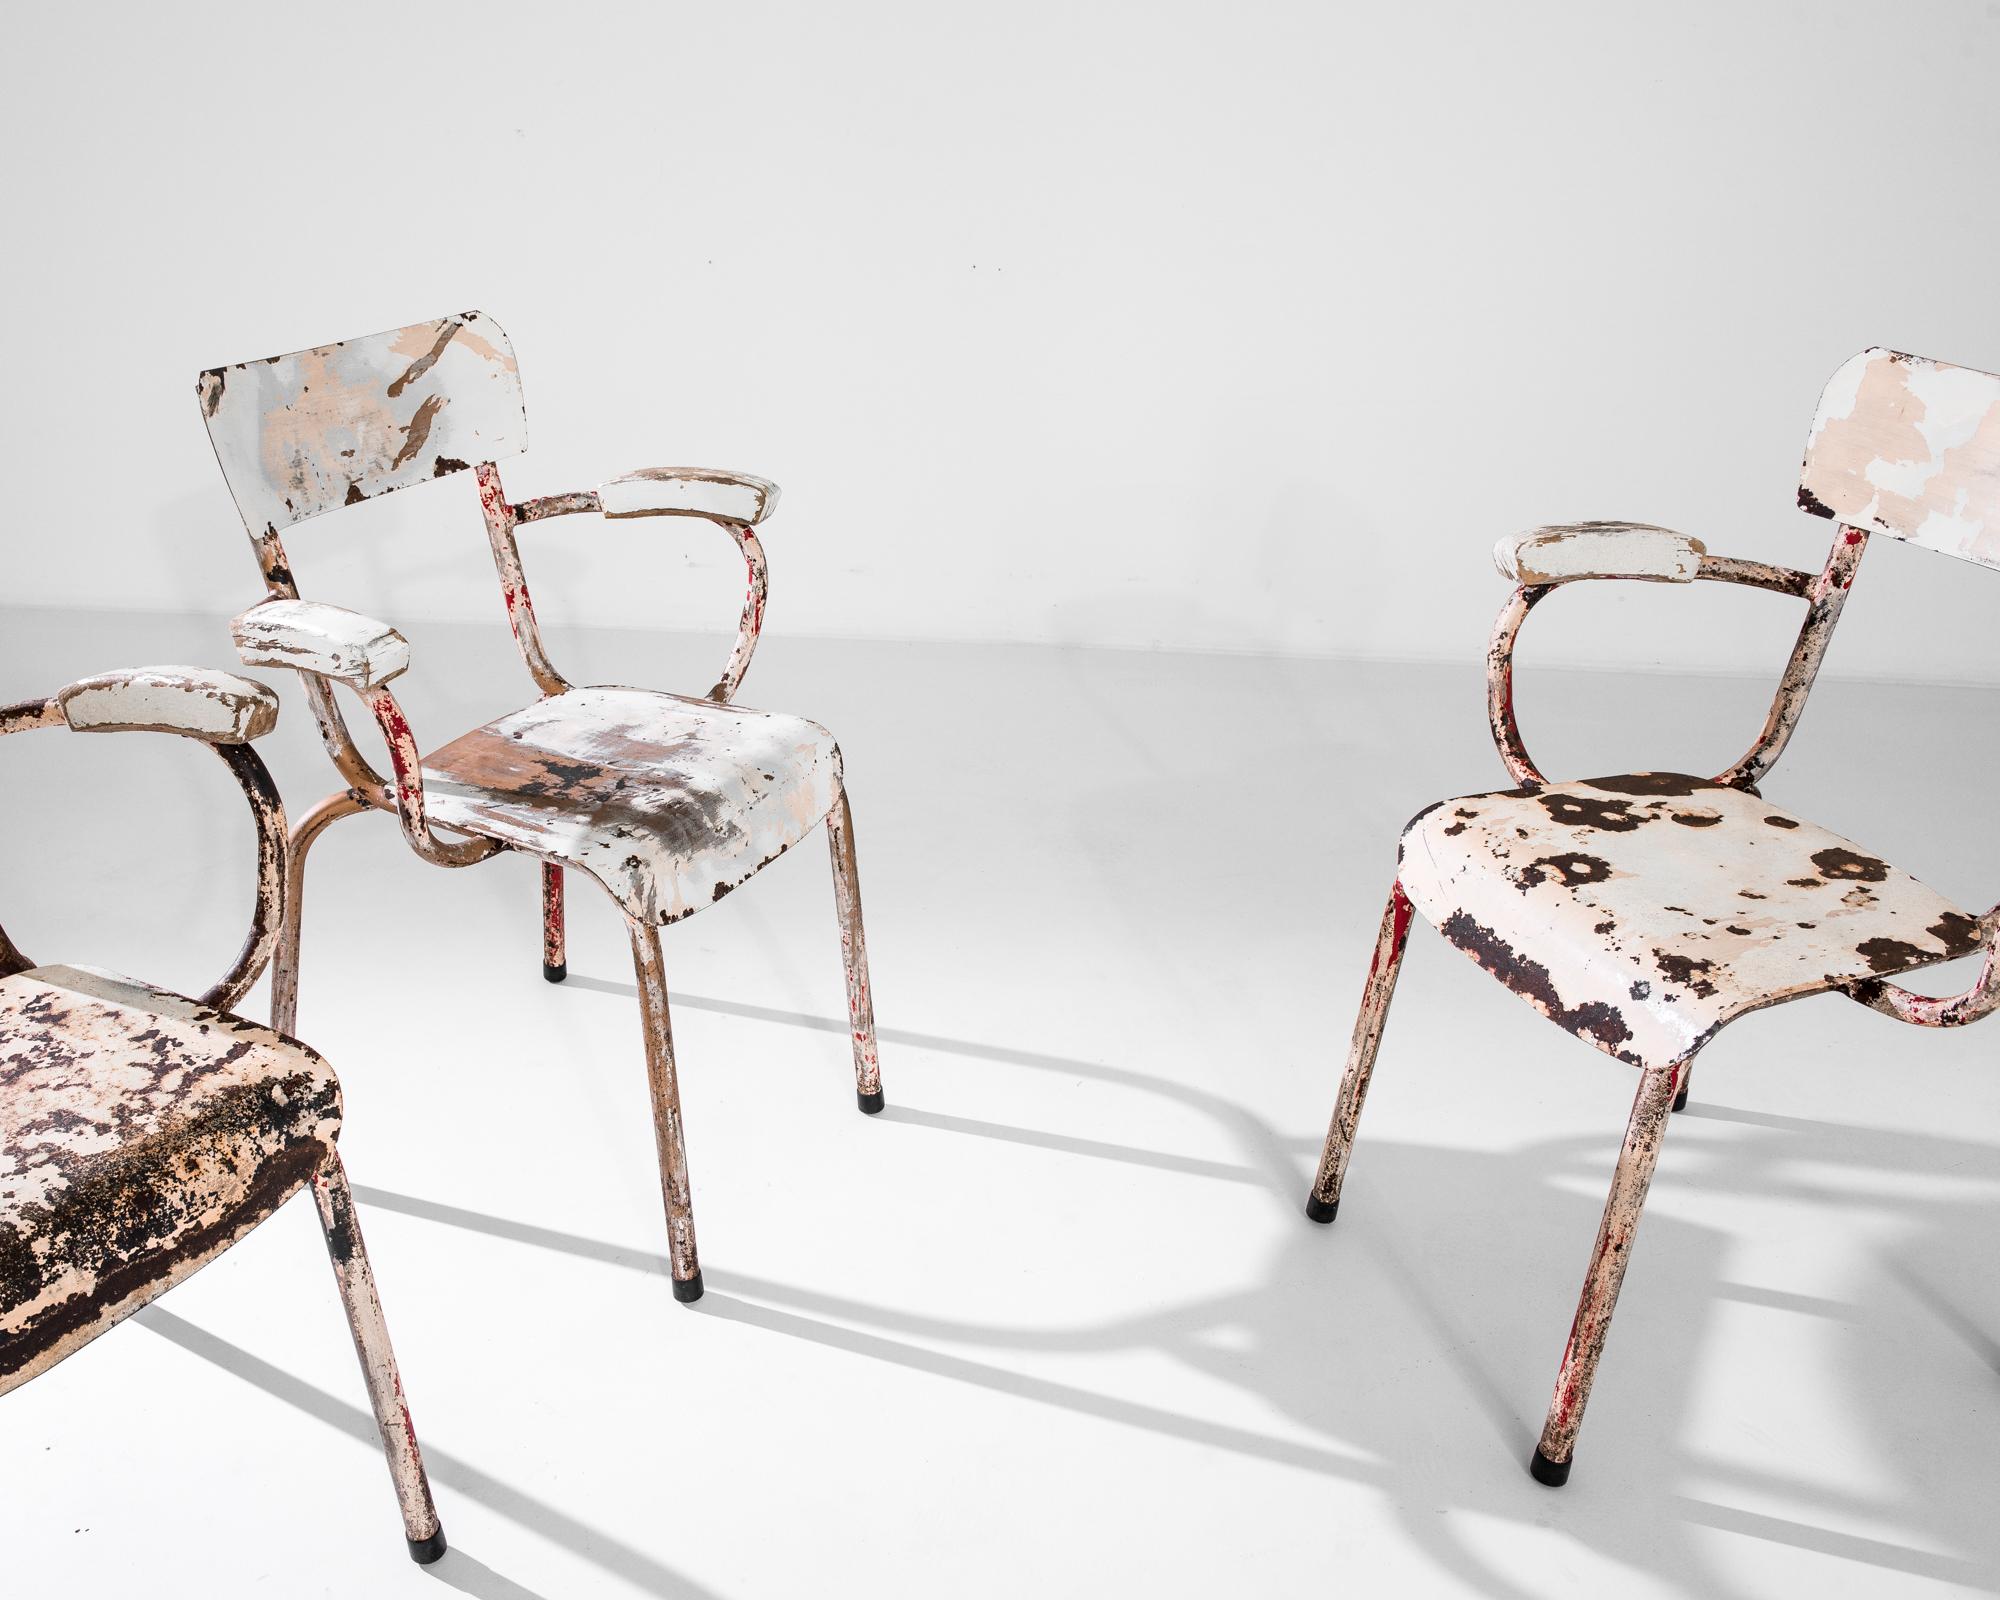 Un ensemble de quatre chaises d'école vintage avec des accoudoirs hauts fabriqués en France vers 1950. Ces authentiques chaises en métal présentent des dossiers bas et des pieds légèrement anguleux qui rappellent les chaises en bois courbé modernes.